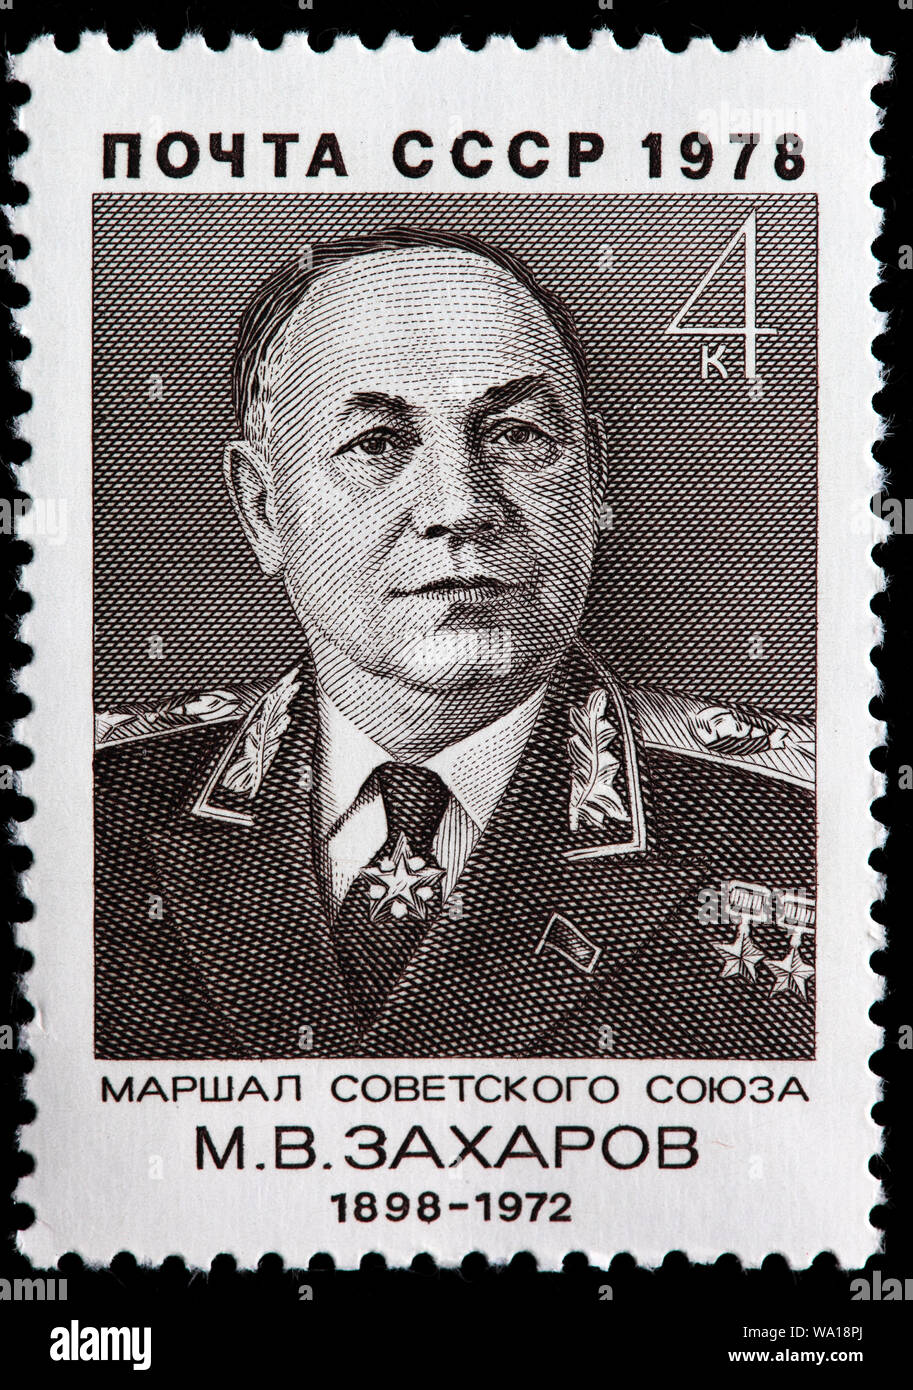 Matvei Zakharov (1898-1972), Maréchal de l'Union soviétique, chef d'état-major général, timbre-poste, Russie, URSS, 1978 Banque D'Images